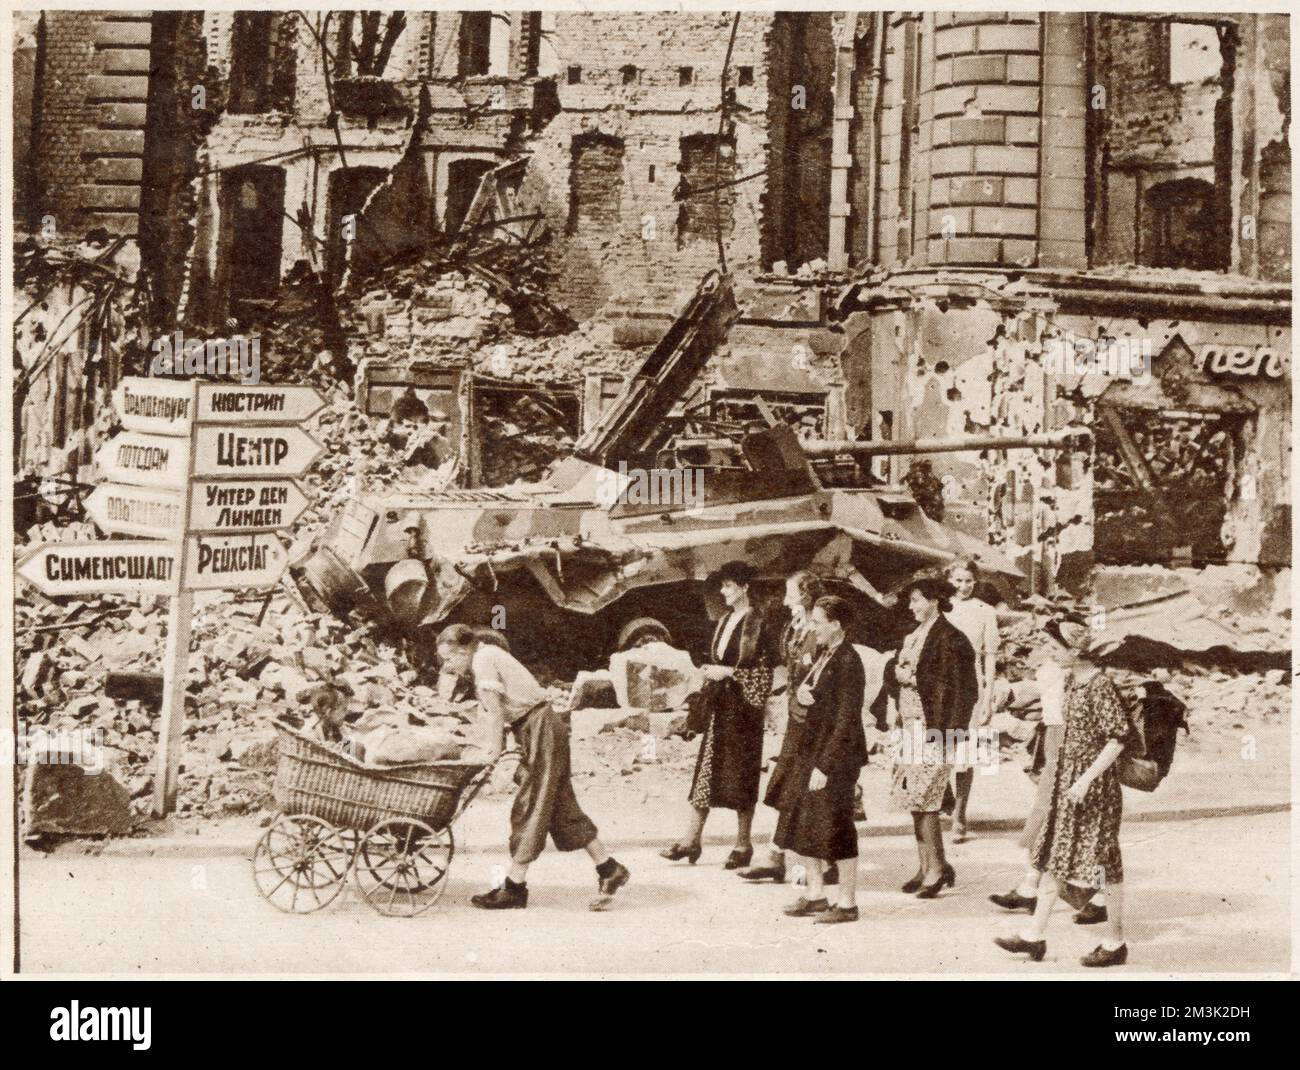 Eine Gruppe von Berlinern, die an den Ruinen des Nollendorf-Platzes vorbeispazieren und nach dem Ende des Zweiten Weltkriegs, Sommer 1945, nach einem Ort zum Leben suchen. Im Hintergrund stehen ein zerstörter deutscher Panzer und ein russisches Straßenschild nebeneinander. Stockfoto